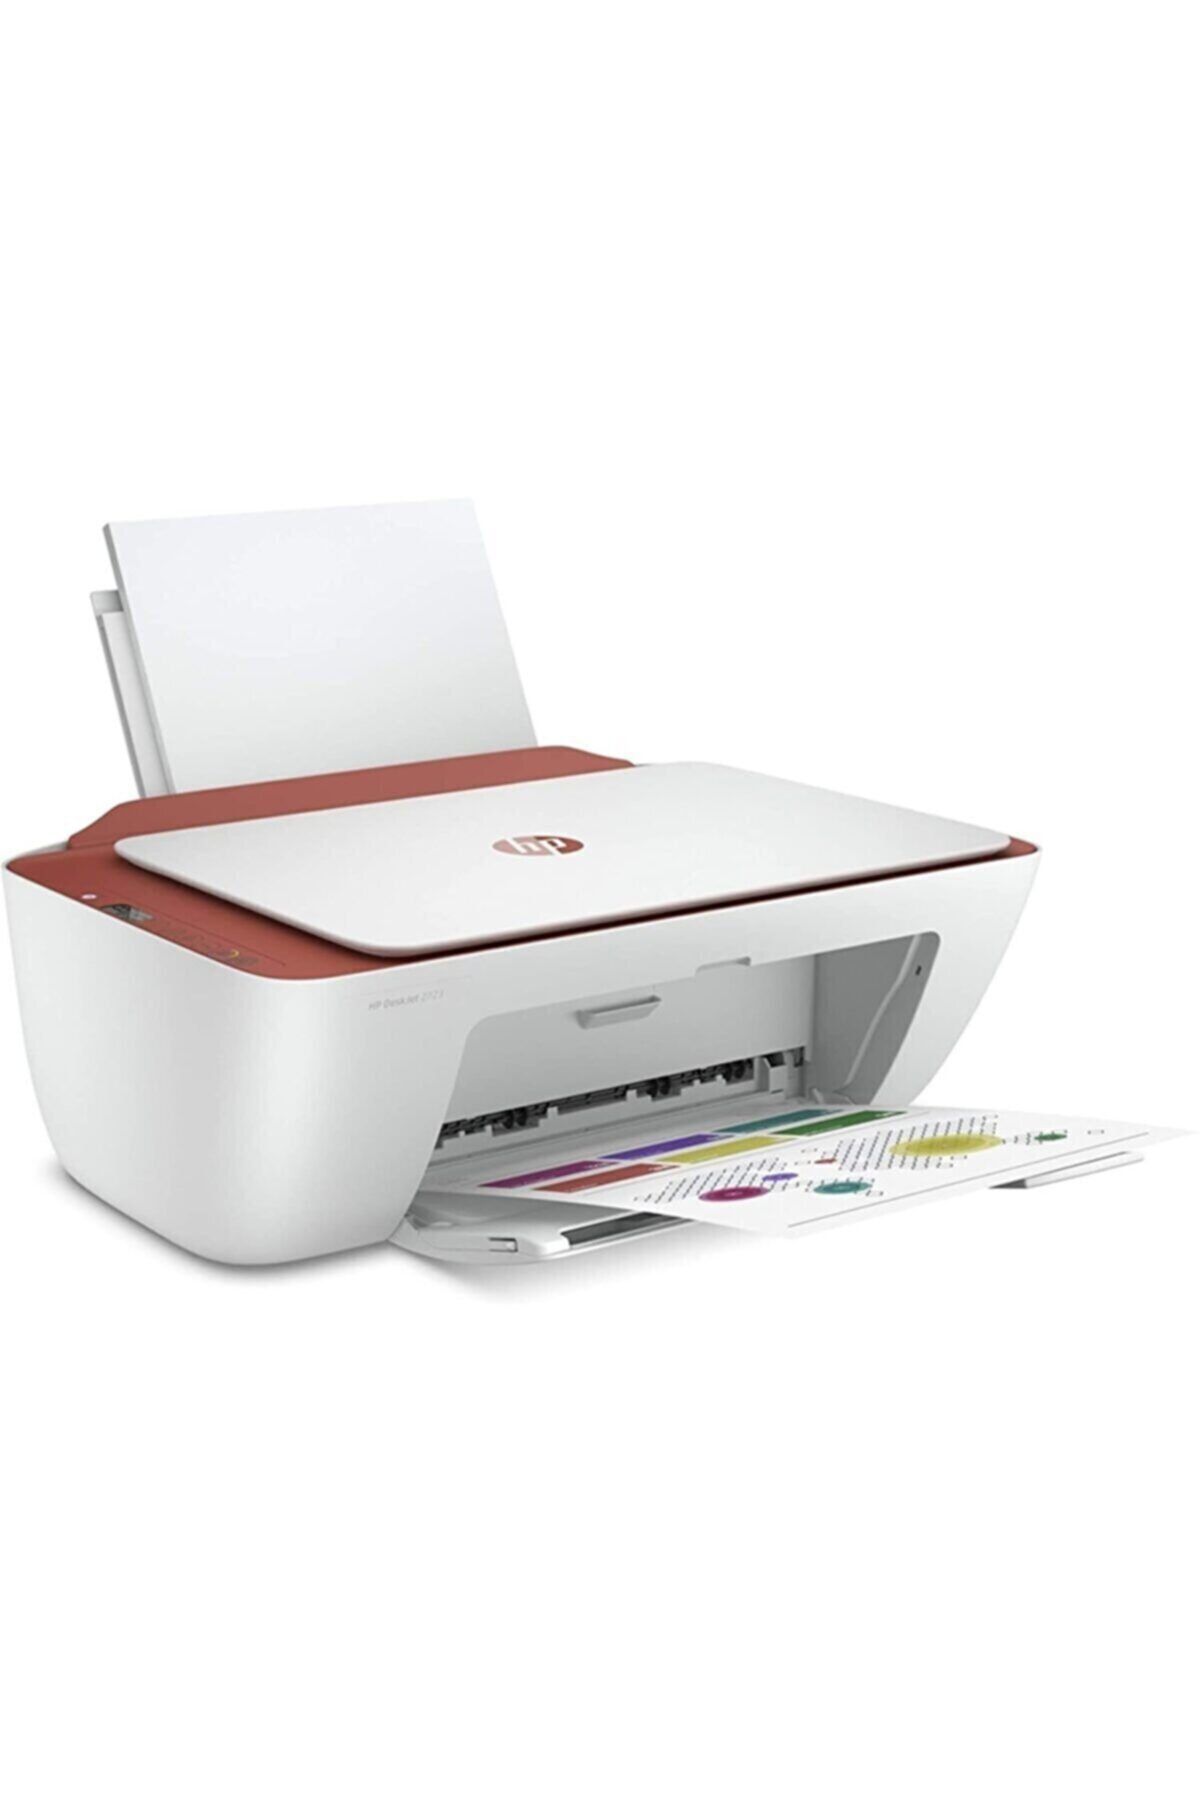 HP - Yazıcı Makinası - Fotokopi Makinası - Tarayıcı - Renkli Yazıcı